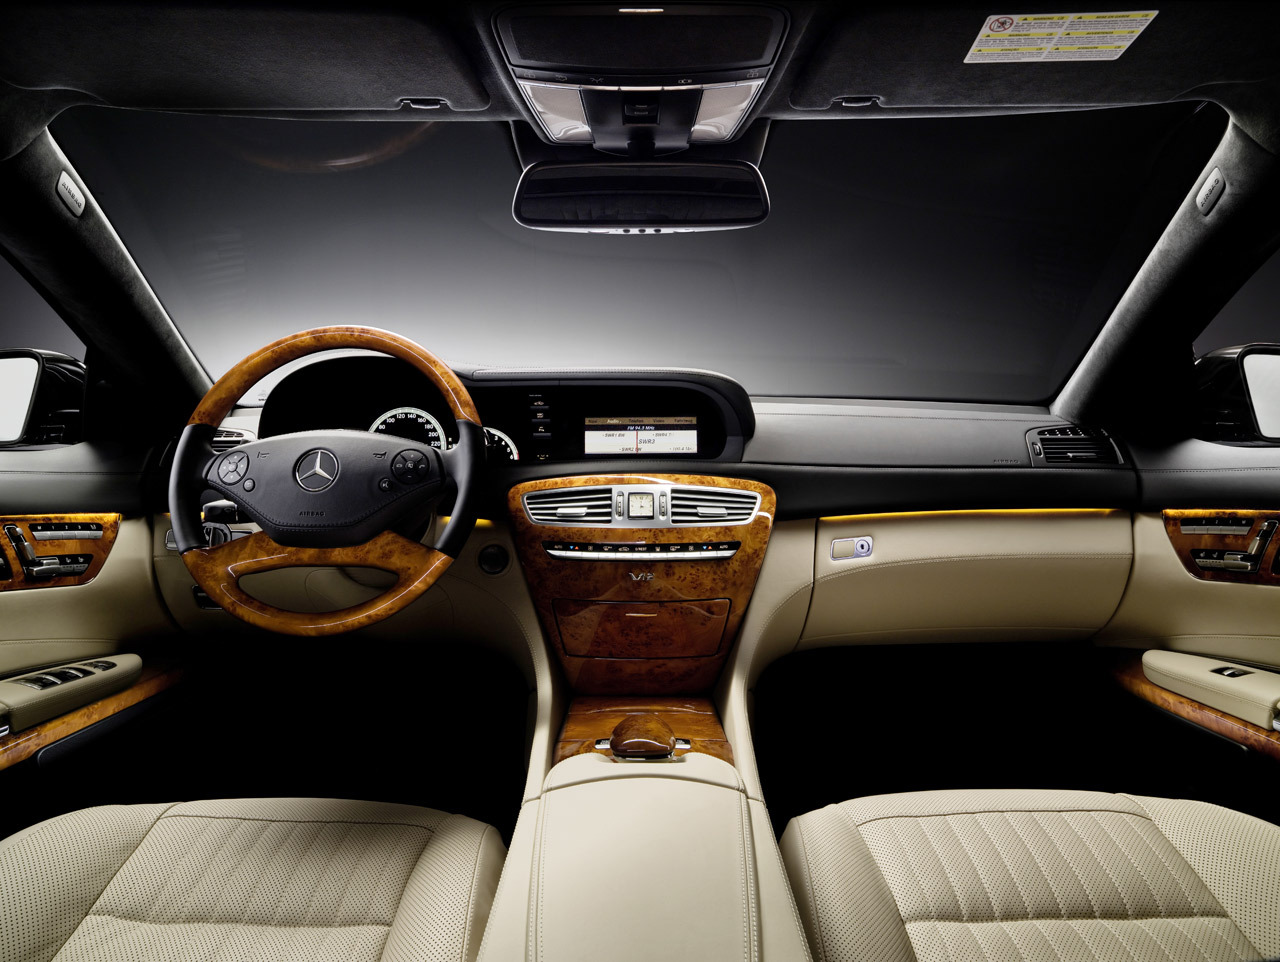 Mercedes CL interior